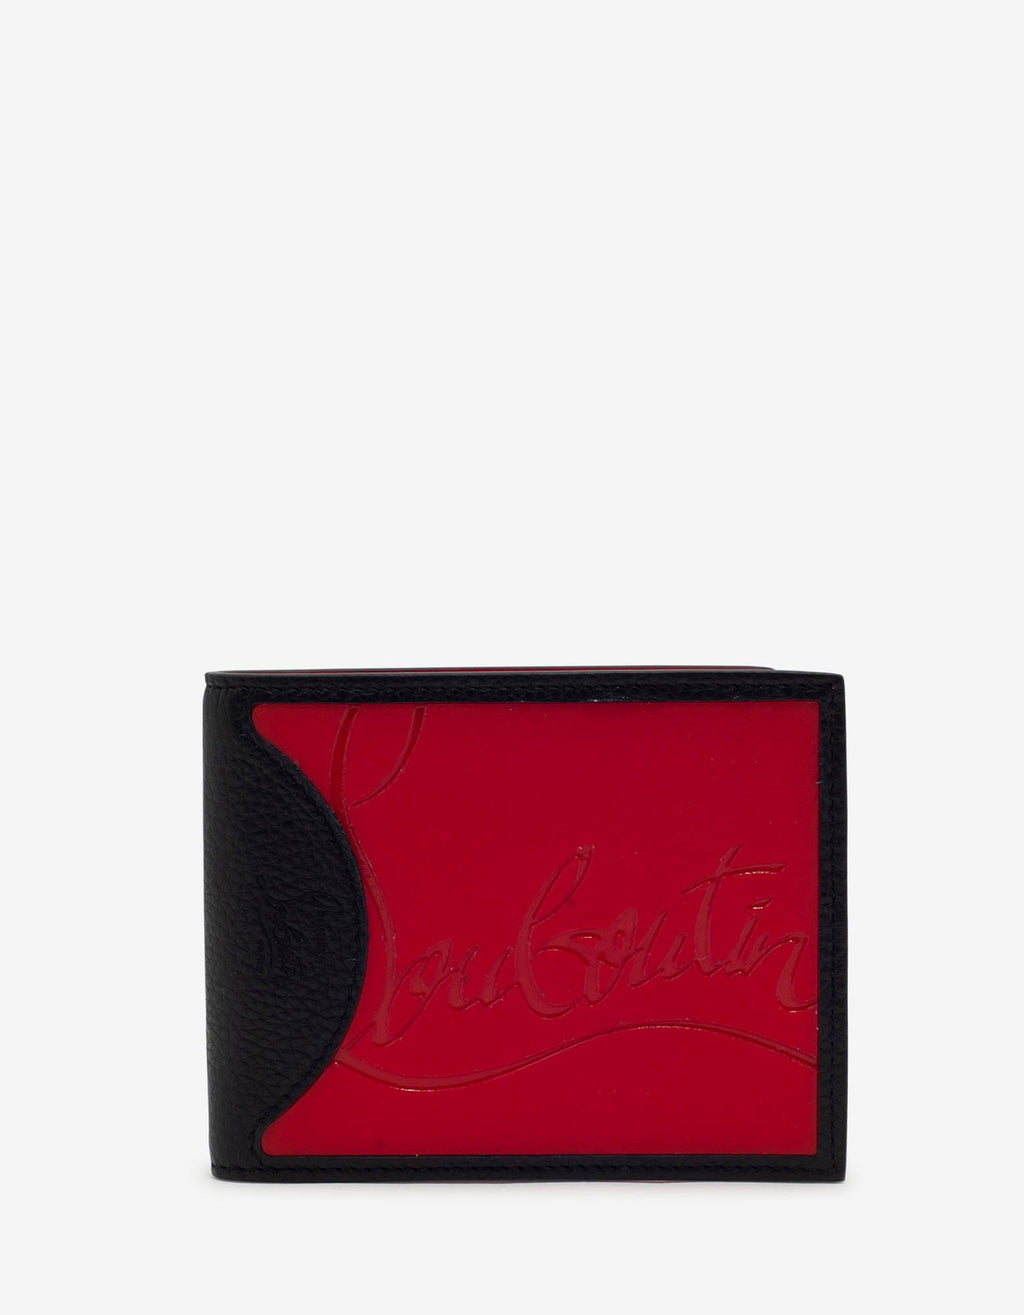 Christian Louboutin Christian Louboutin Coolcard Sneakers Sole Black & Red Billfold Wallet